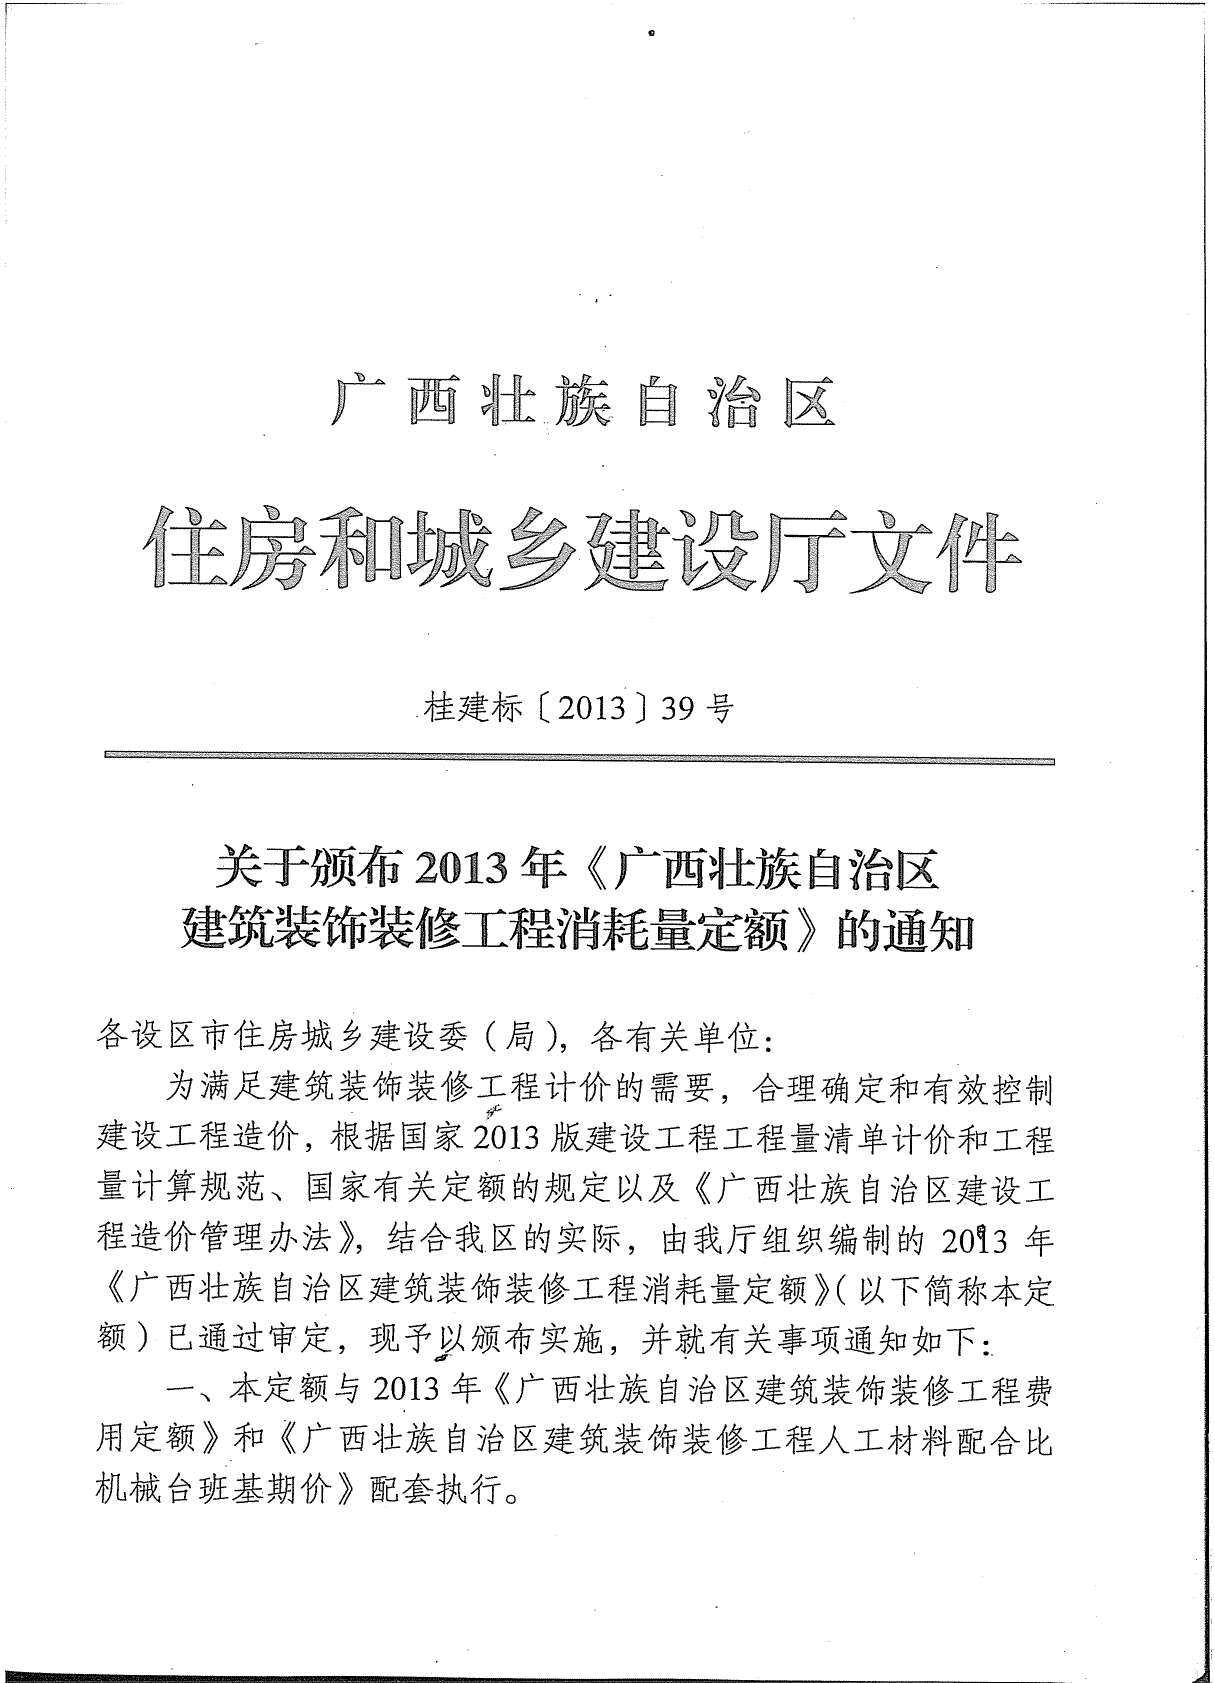 2013广西建筑装饰工程消耗量定额(上册1)